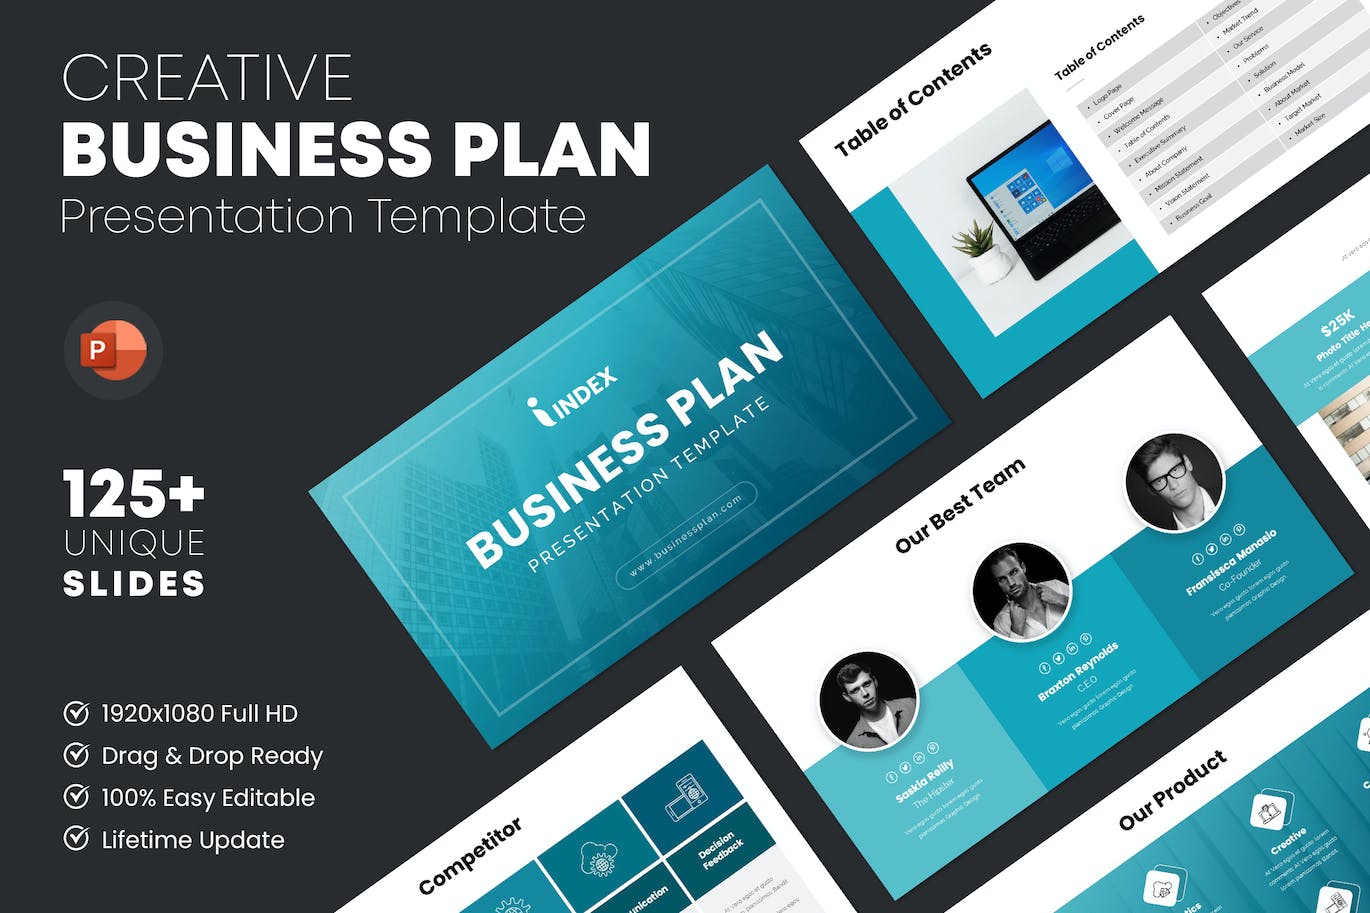 企业计划方案PPT演示幻灯片模板 Business Plan PowerPoint Template 幻灯图表 第1张